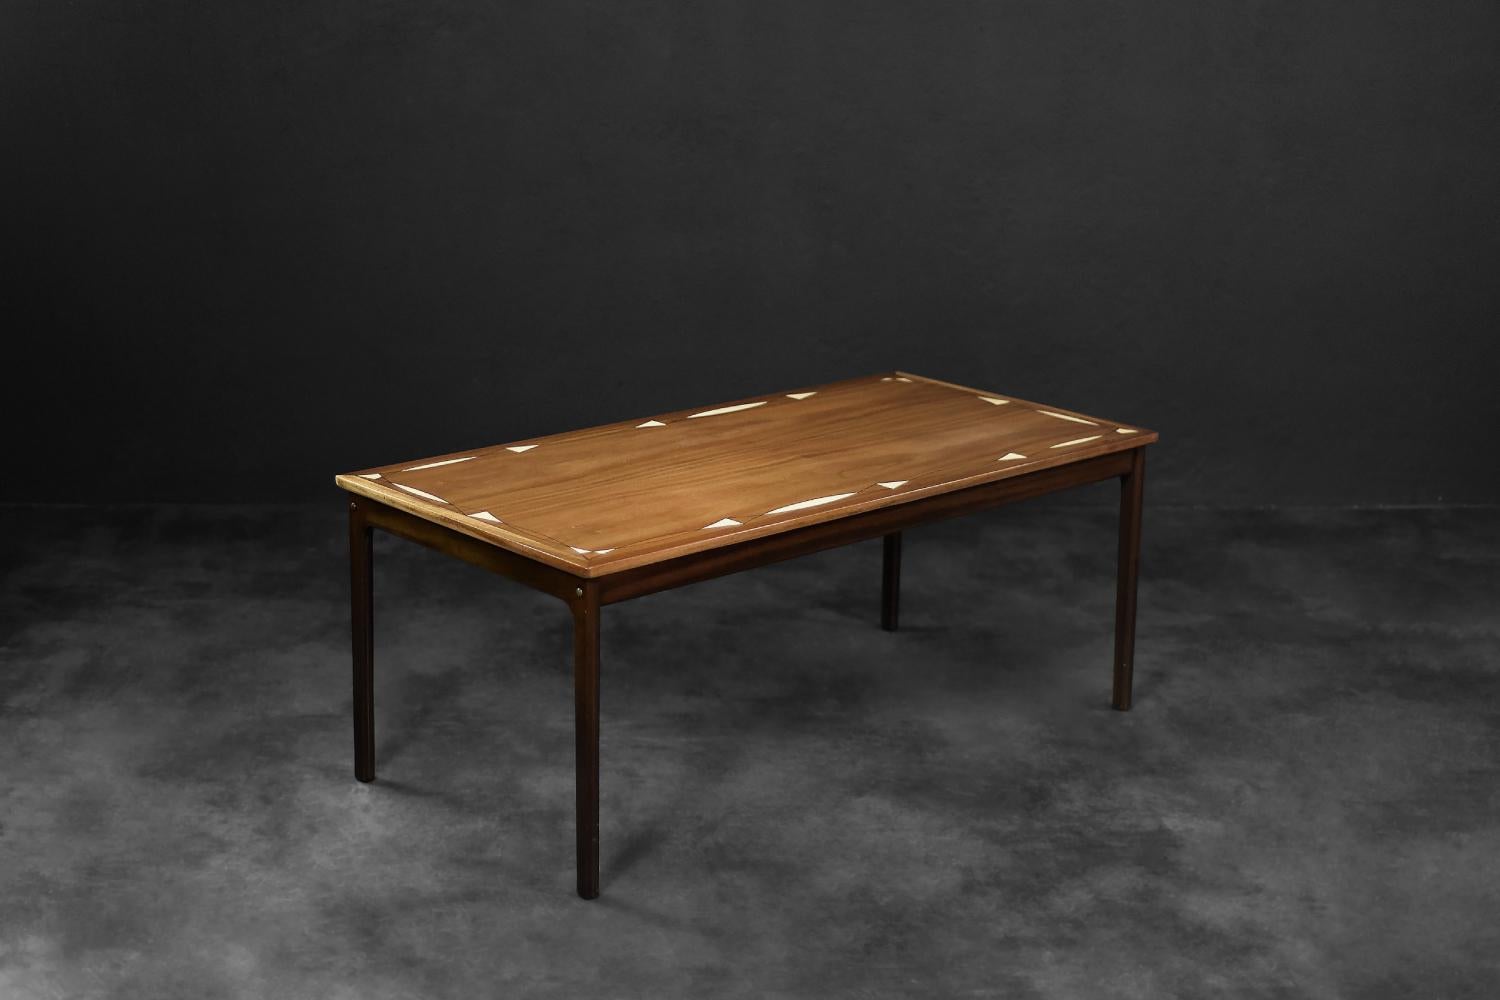 Das Gestell dieses Tisches ist ein Entwurf von Ole Wanscher für den dänischen Hersteller PJ Møbler. Es wurde in den 1960er Jahren hergestellt. Er ist aus hochwertigem dunklem Mahagoni mit interessanter Maserung gefertigt. Die Tischplatte ist